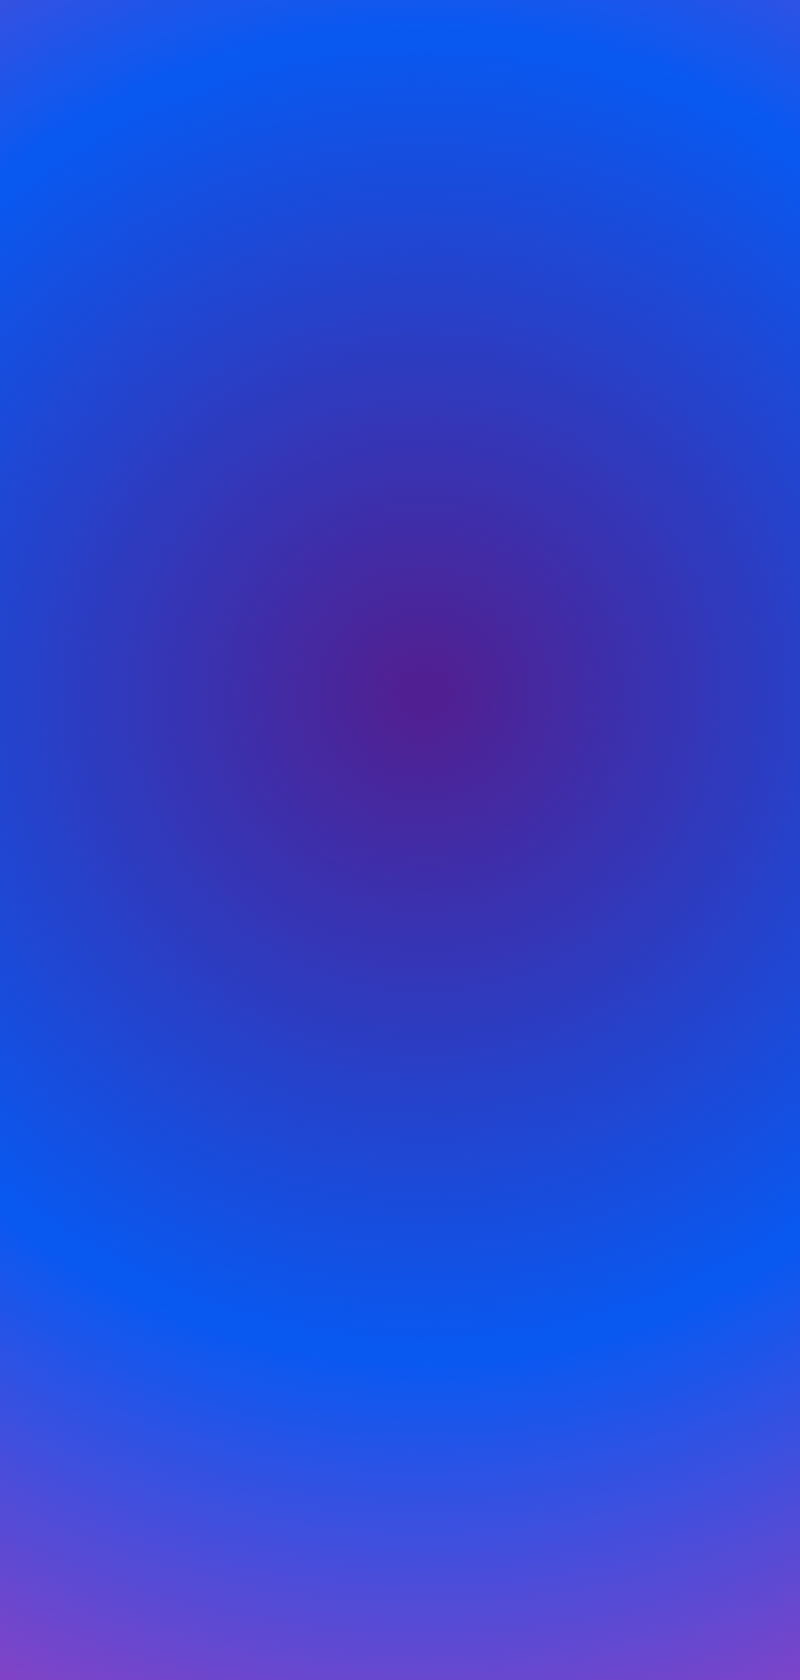 Blue Gradient: Hãy xem hình nền lam Gradient đầy mê hoặc này, với các màu xanh khác nhau tạo thành một sự chuyển đổi tuyệt đẹp. Màu xanh được yêu thích khi sử dụng trong thiết kế và màu Gradient xanh này cũng không ngoại lệ.